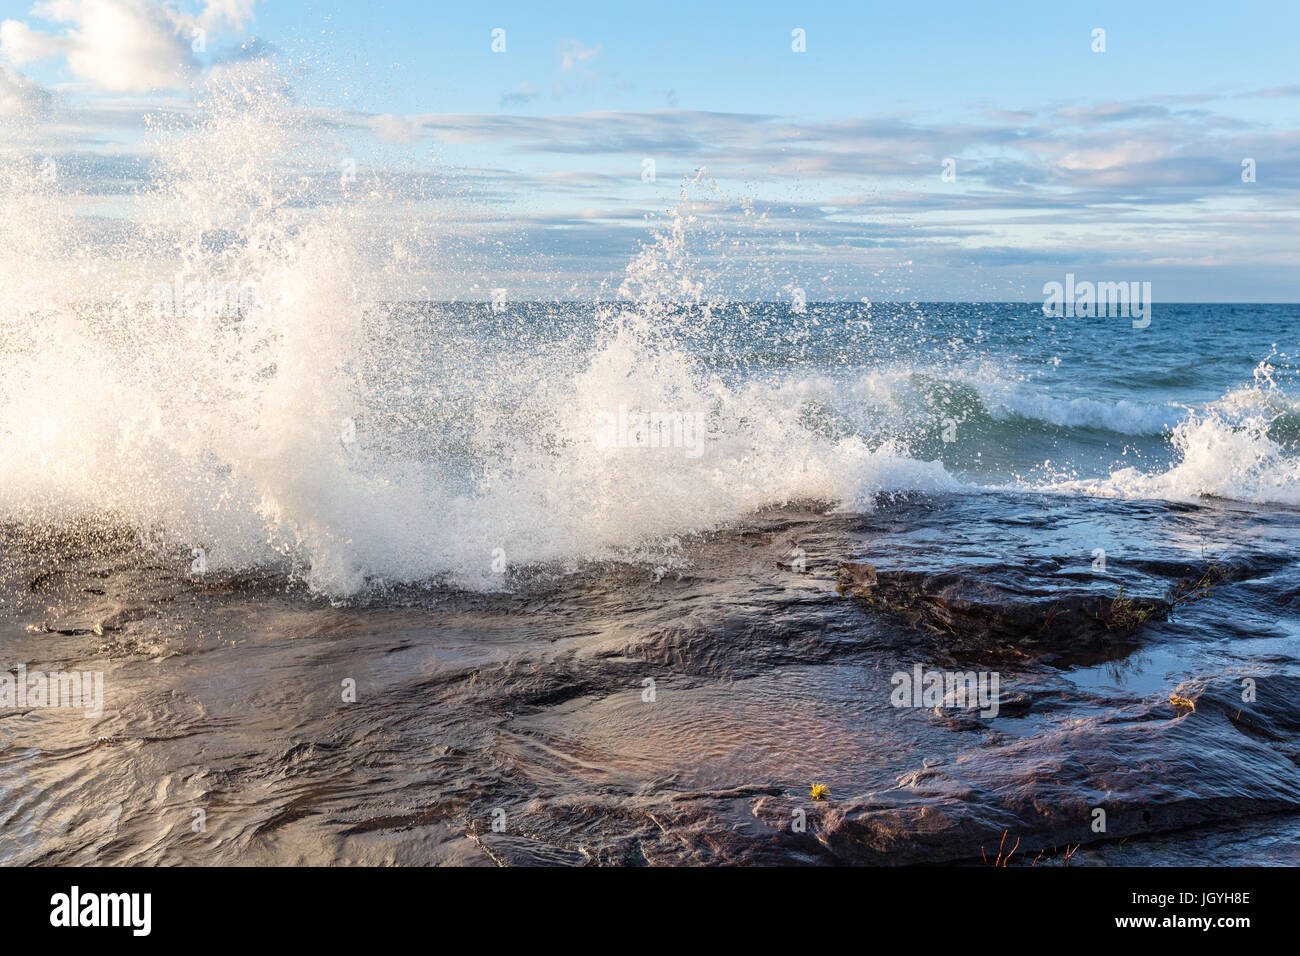 Lake Superior orkanartigen Winden fahren eine brechenden Welle über Sandsteinfelsen an dargestellter Felsen-Staatsangehöriger Lakeshore in Munising Michigan Stockfoto